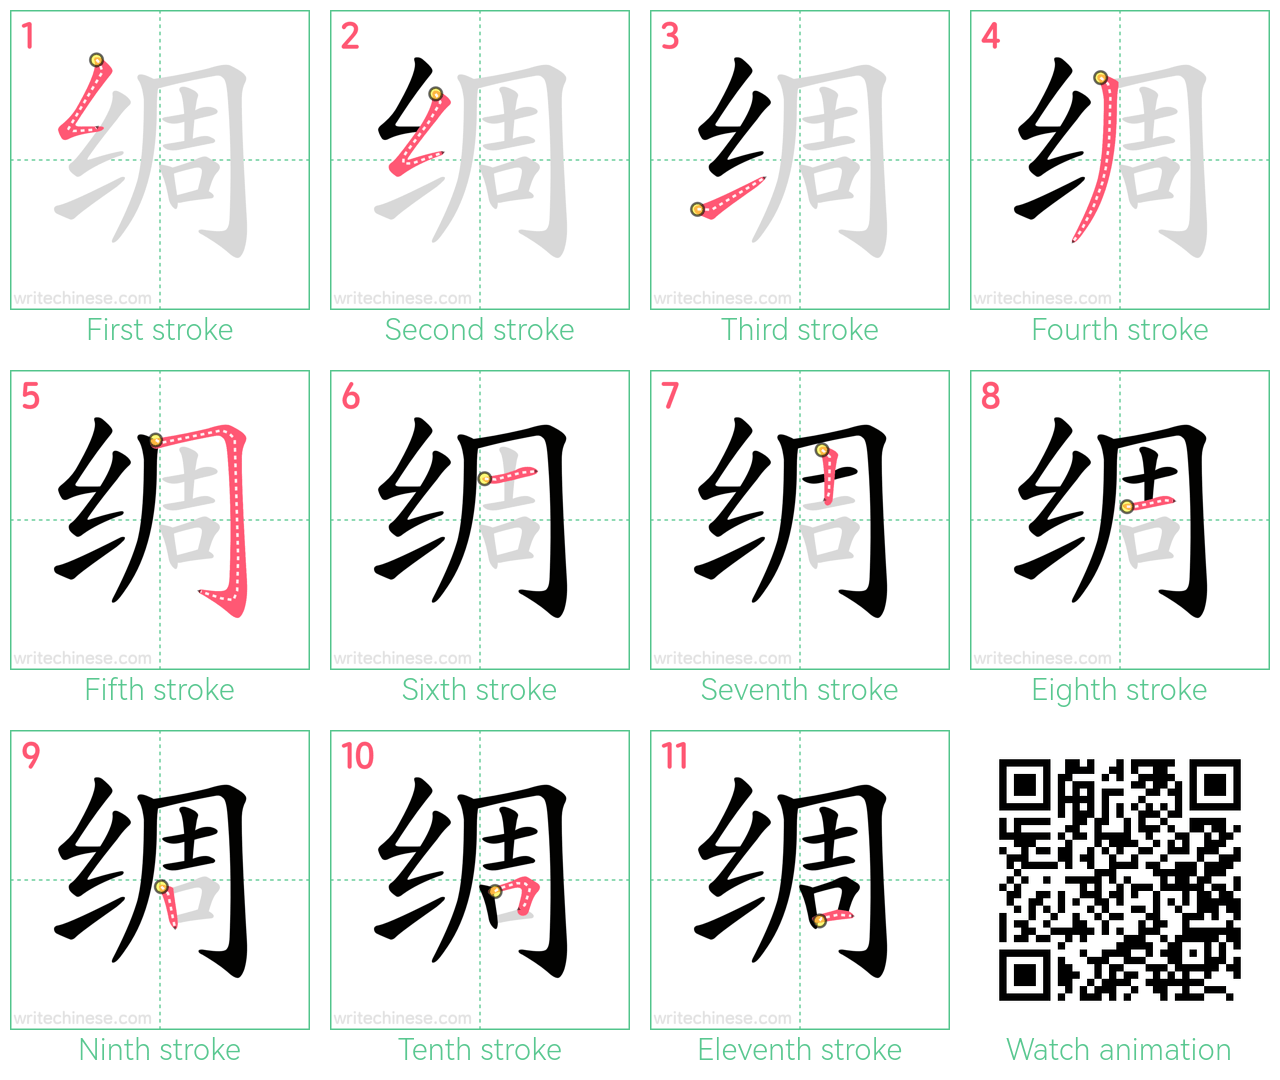 绸 step-by-step stroke order diagrams